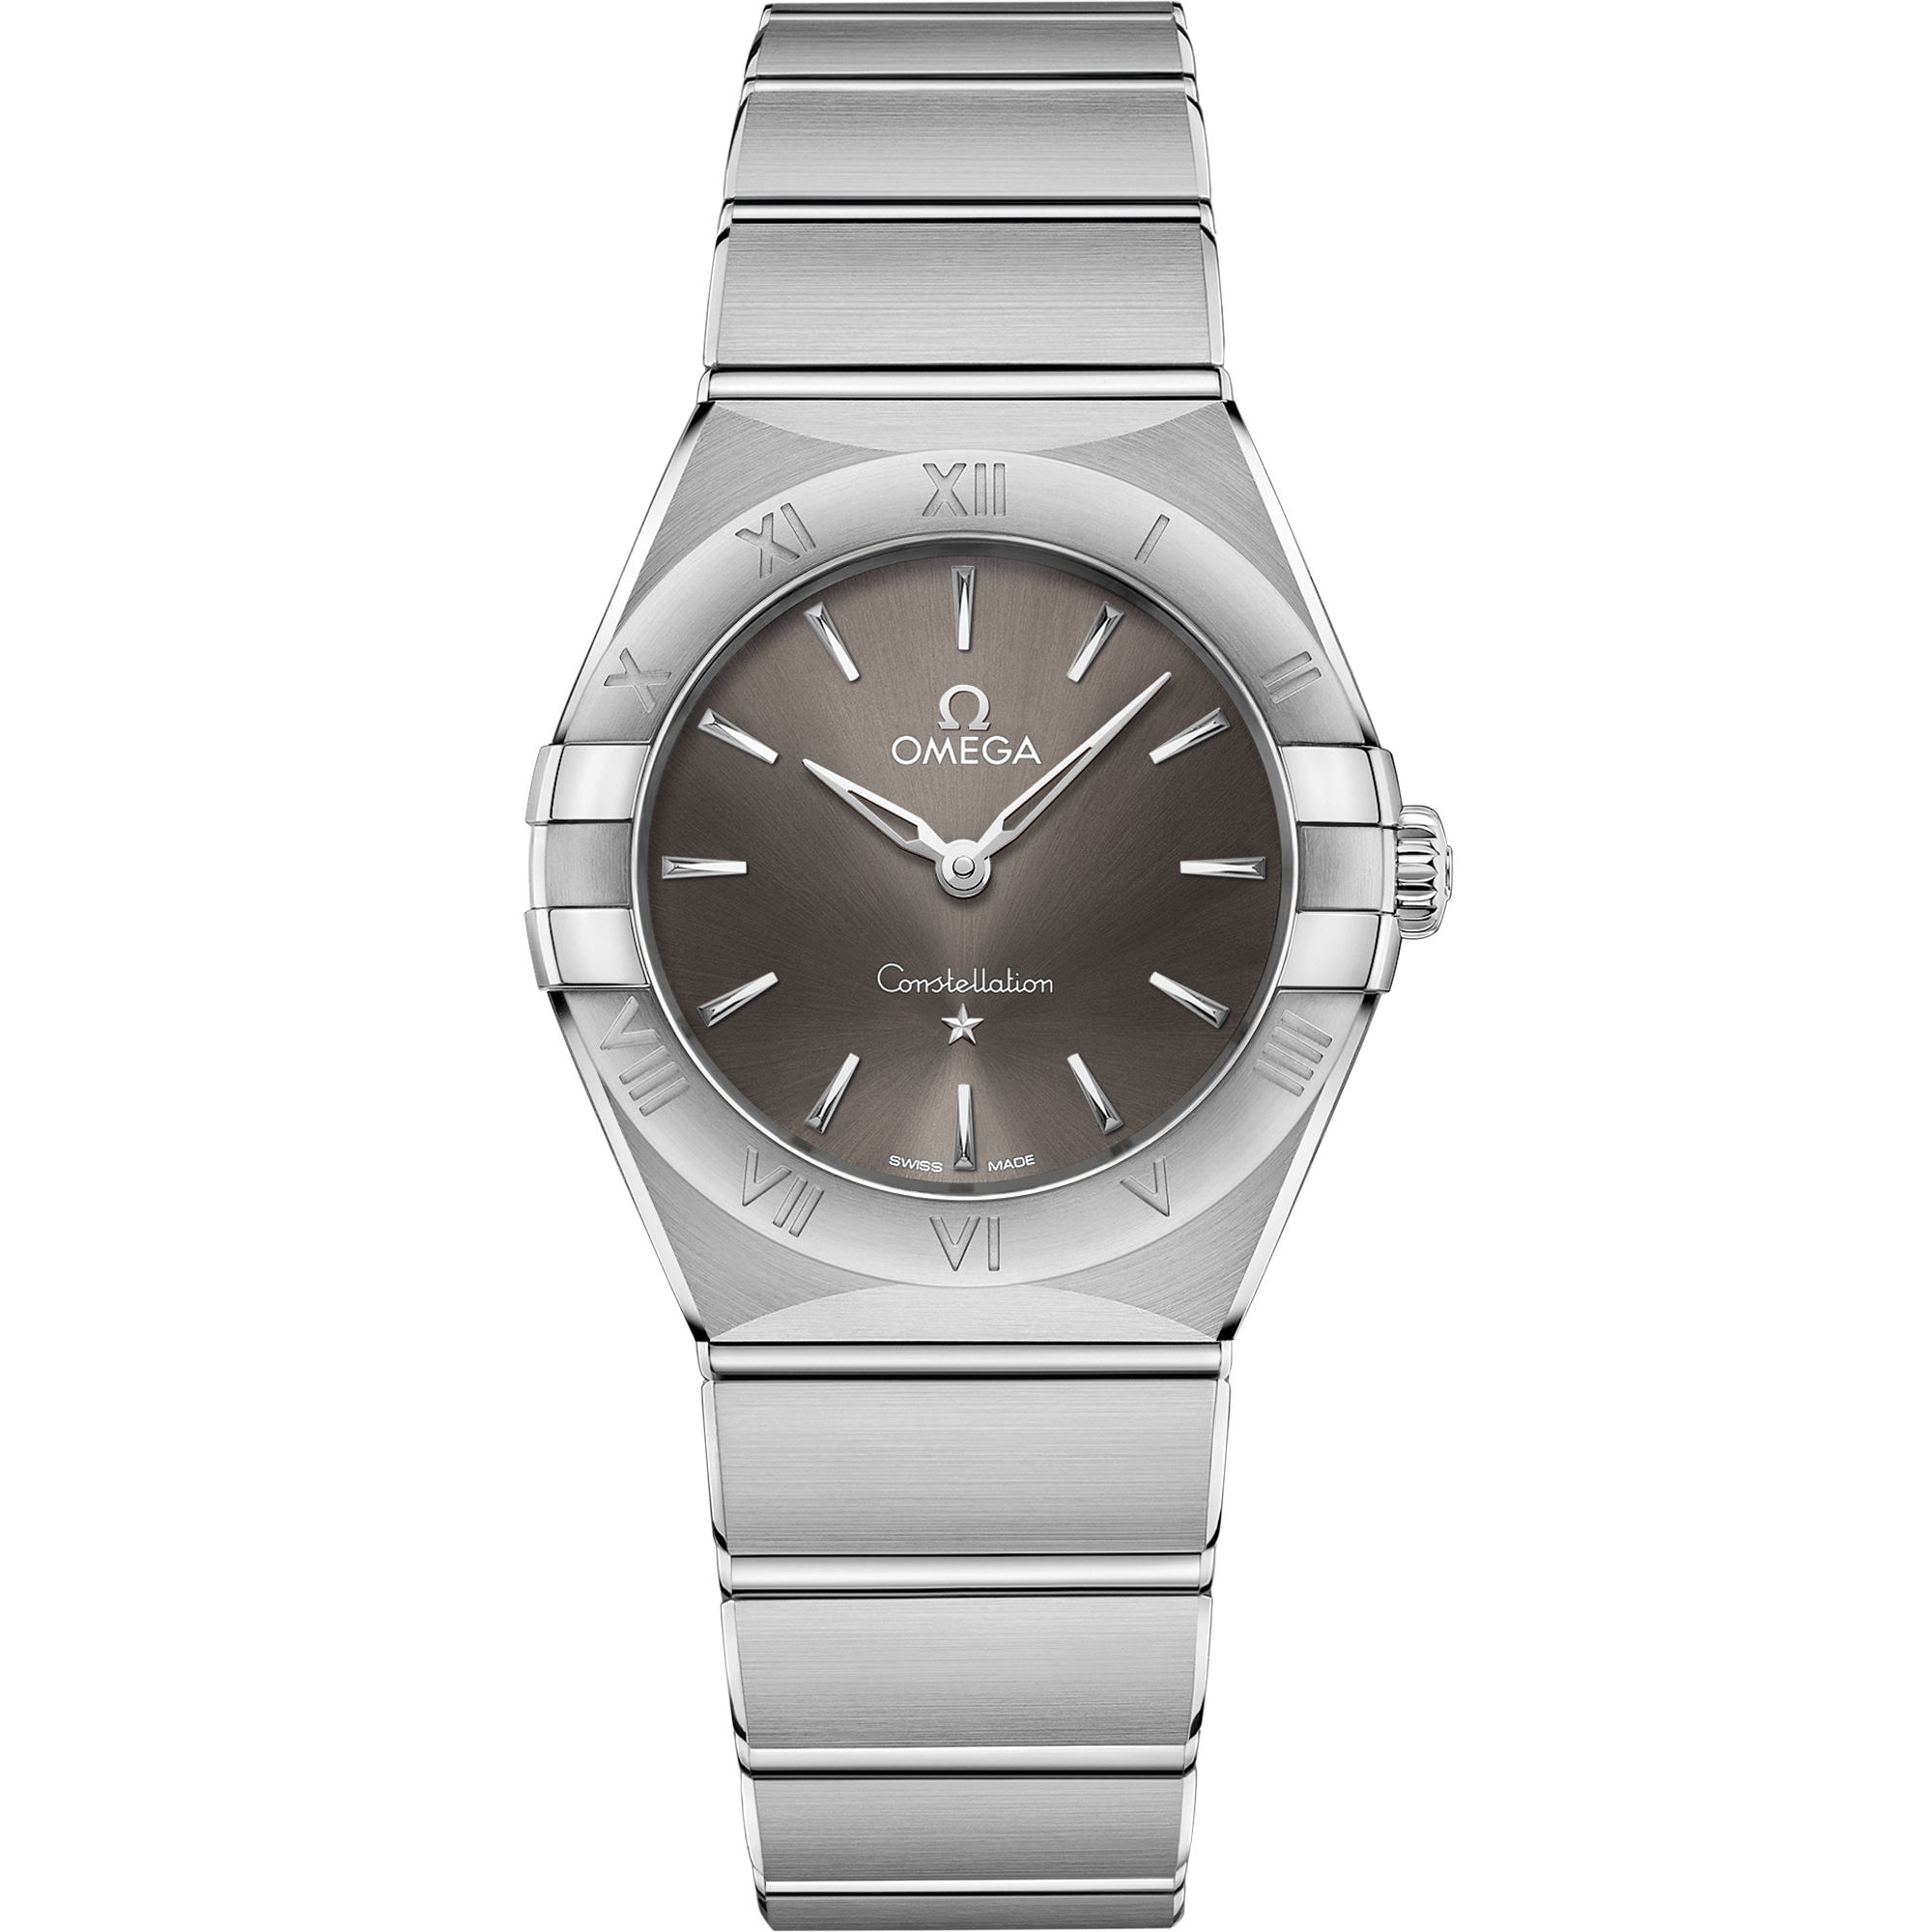 Uhr mit Grau Zifferblatt auf Stahl Gehäuse mit Edelstahlarmband bracelet - Constellation 28 mm, Stahl mit Stahlband - 131.10.28.60.06.001